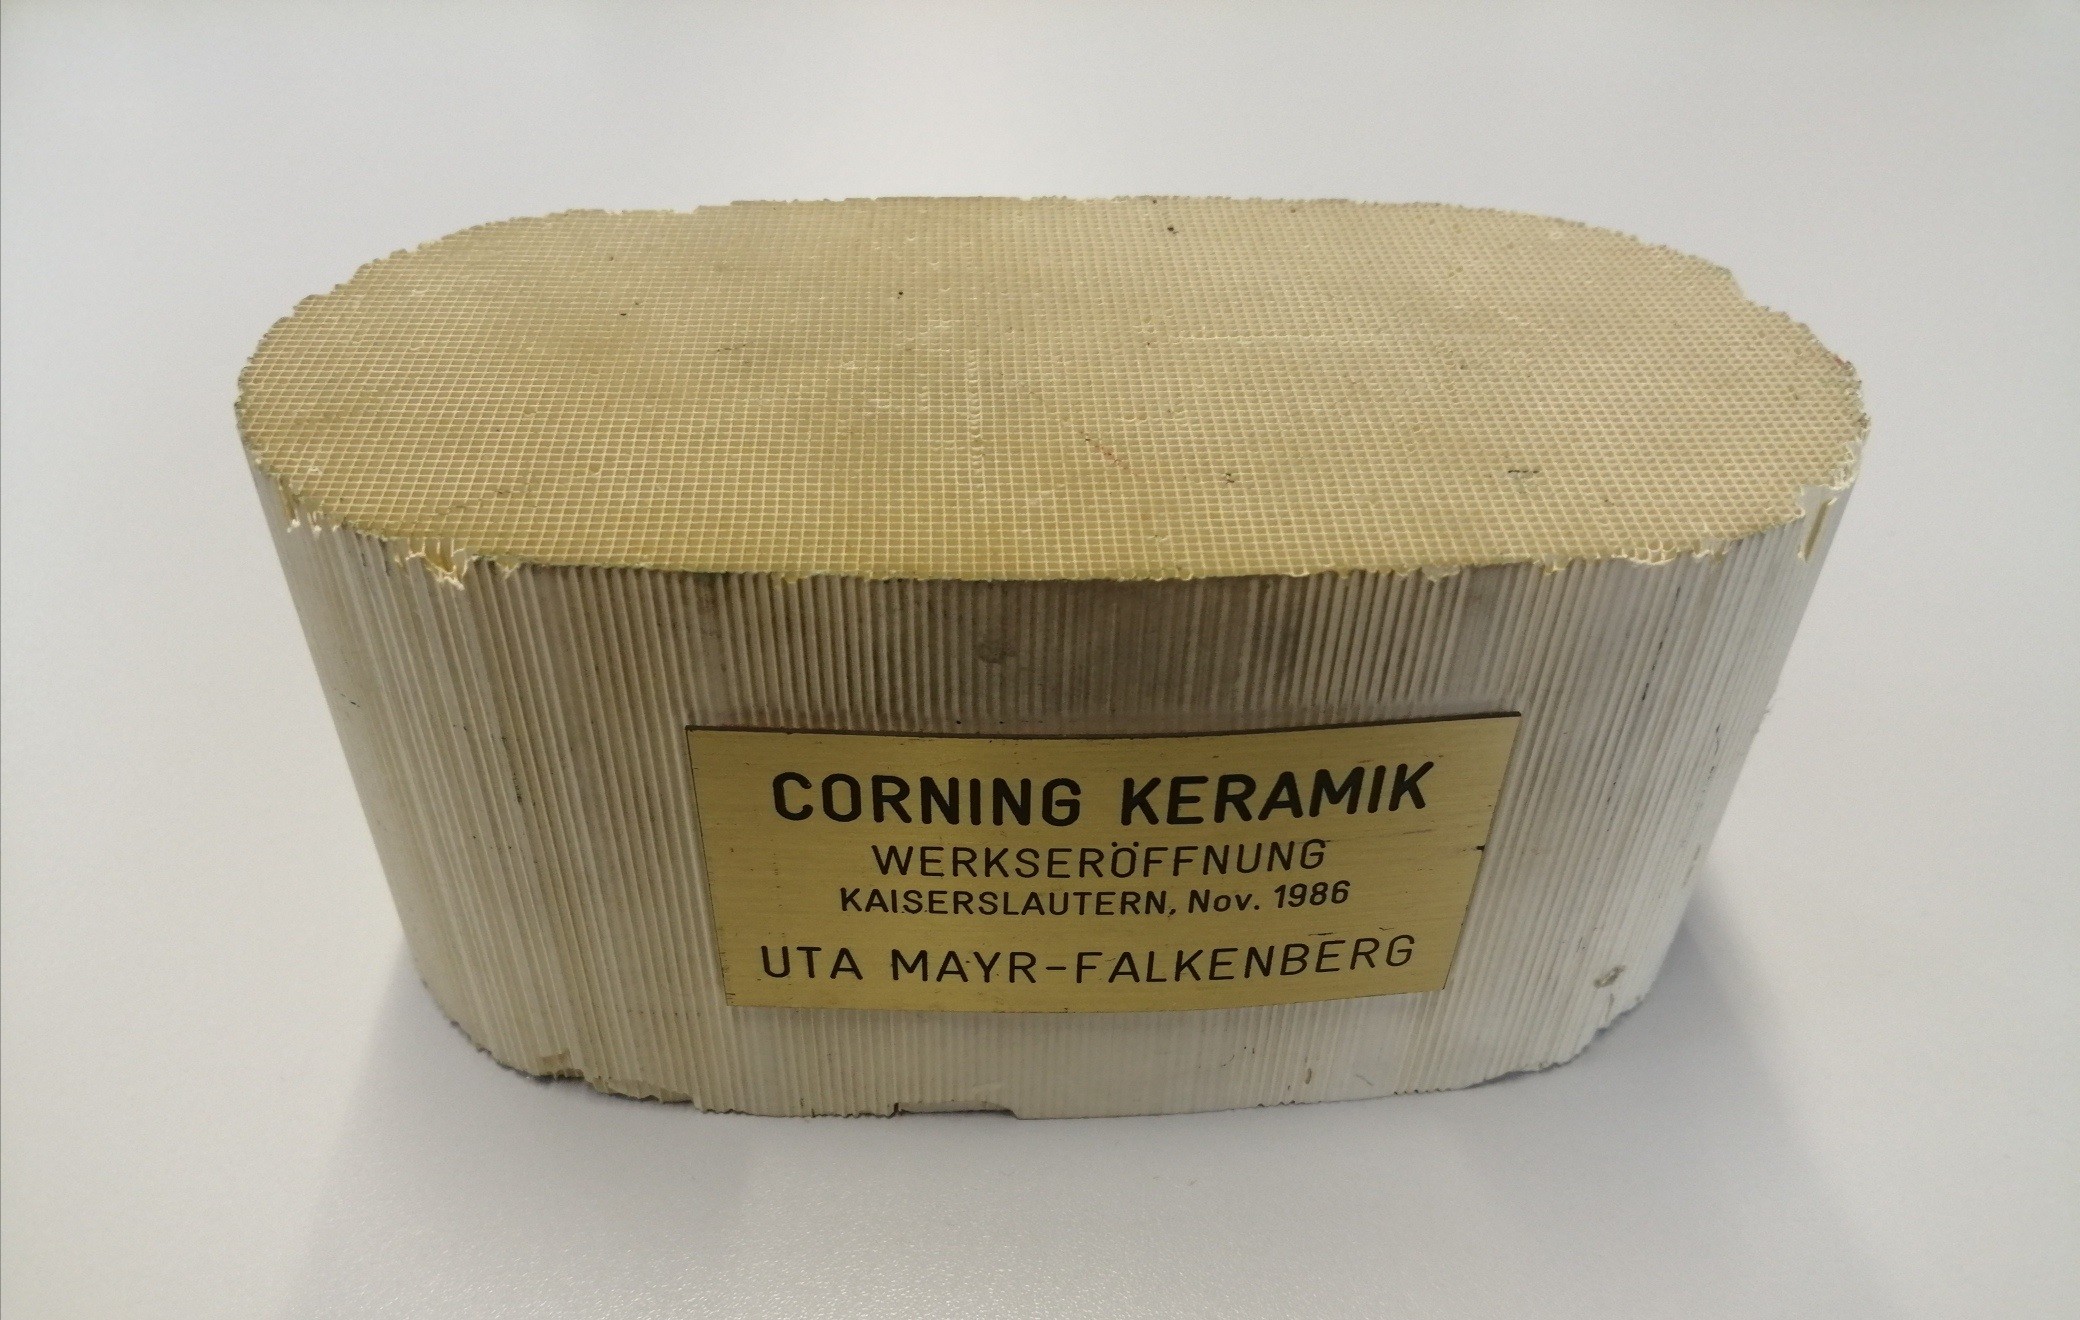 Corning-Keramik: Katalysator, 1986 (Sara Brück, Stadtmuseum Kaiserslautern CC BY-NC-SA)